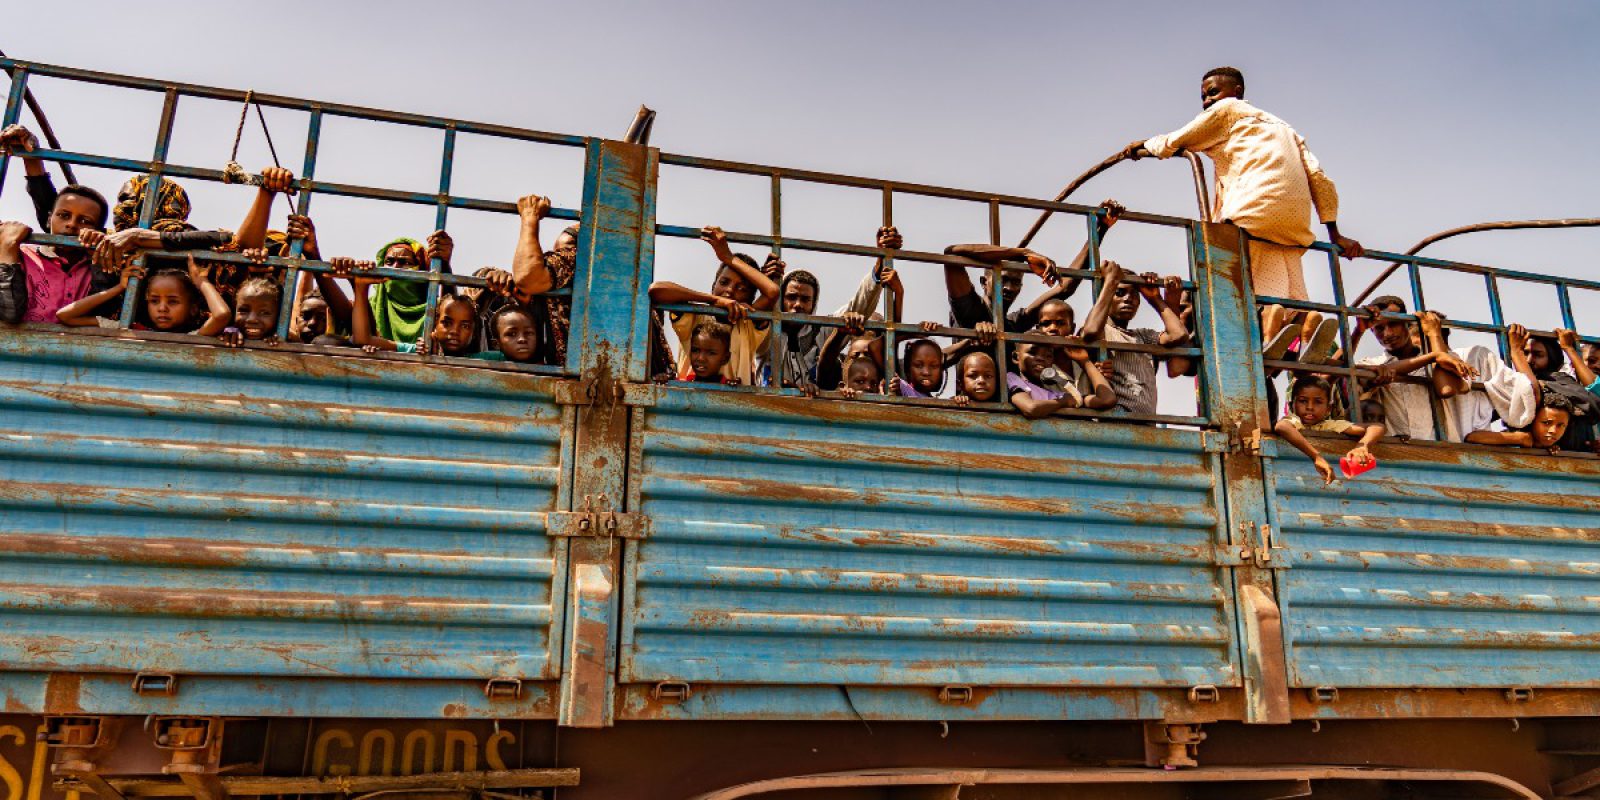 El JRS publica un llamado humanitario para el Sudán, que un año después de la escalada del conflicto es la mayor crisis de desplazamiento. Personas huyendo del conflicto en Sudán. Renk, frontera entre Sudán y Sudán del Sur (Servicio Jesuita a Refugiados).